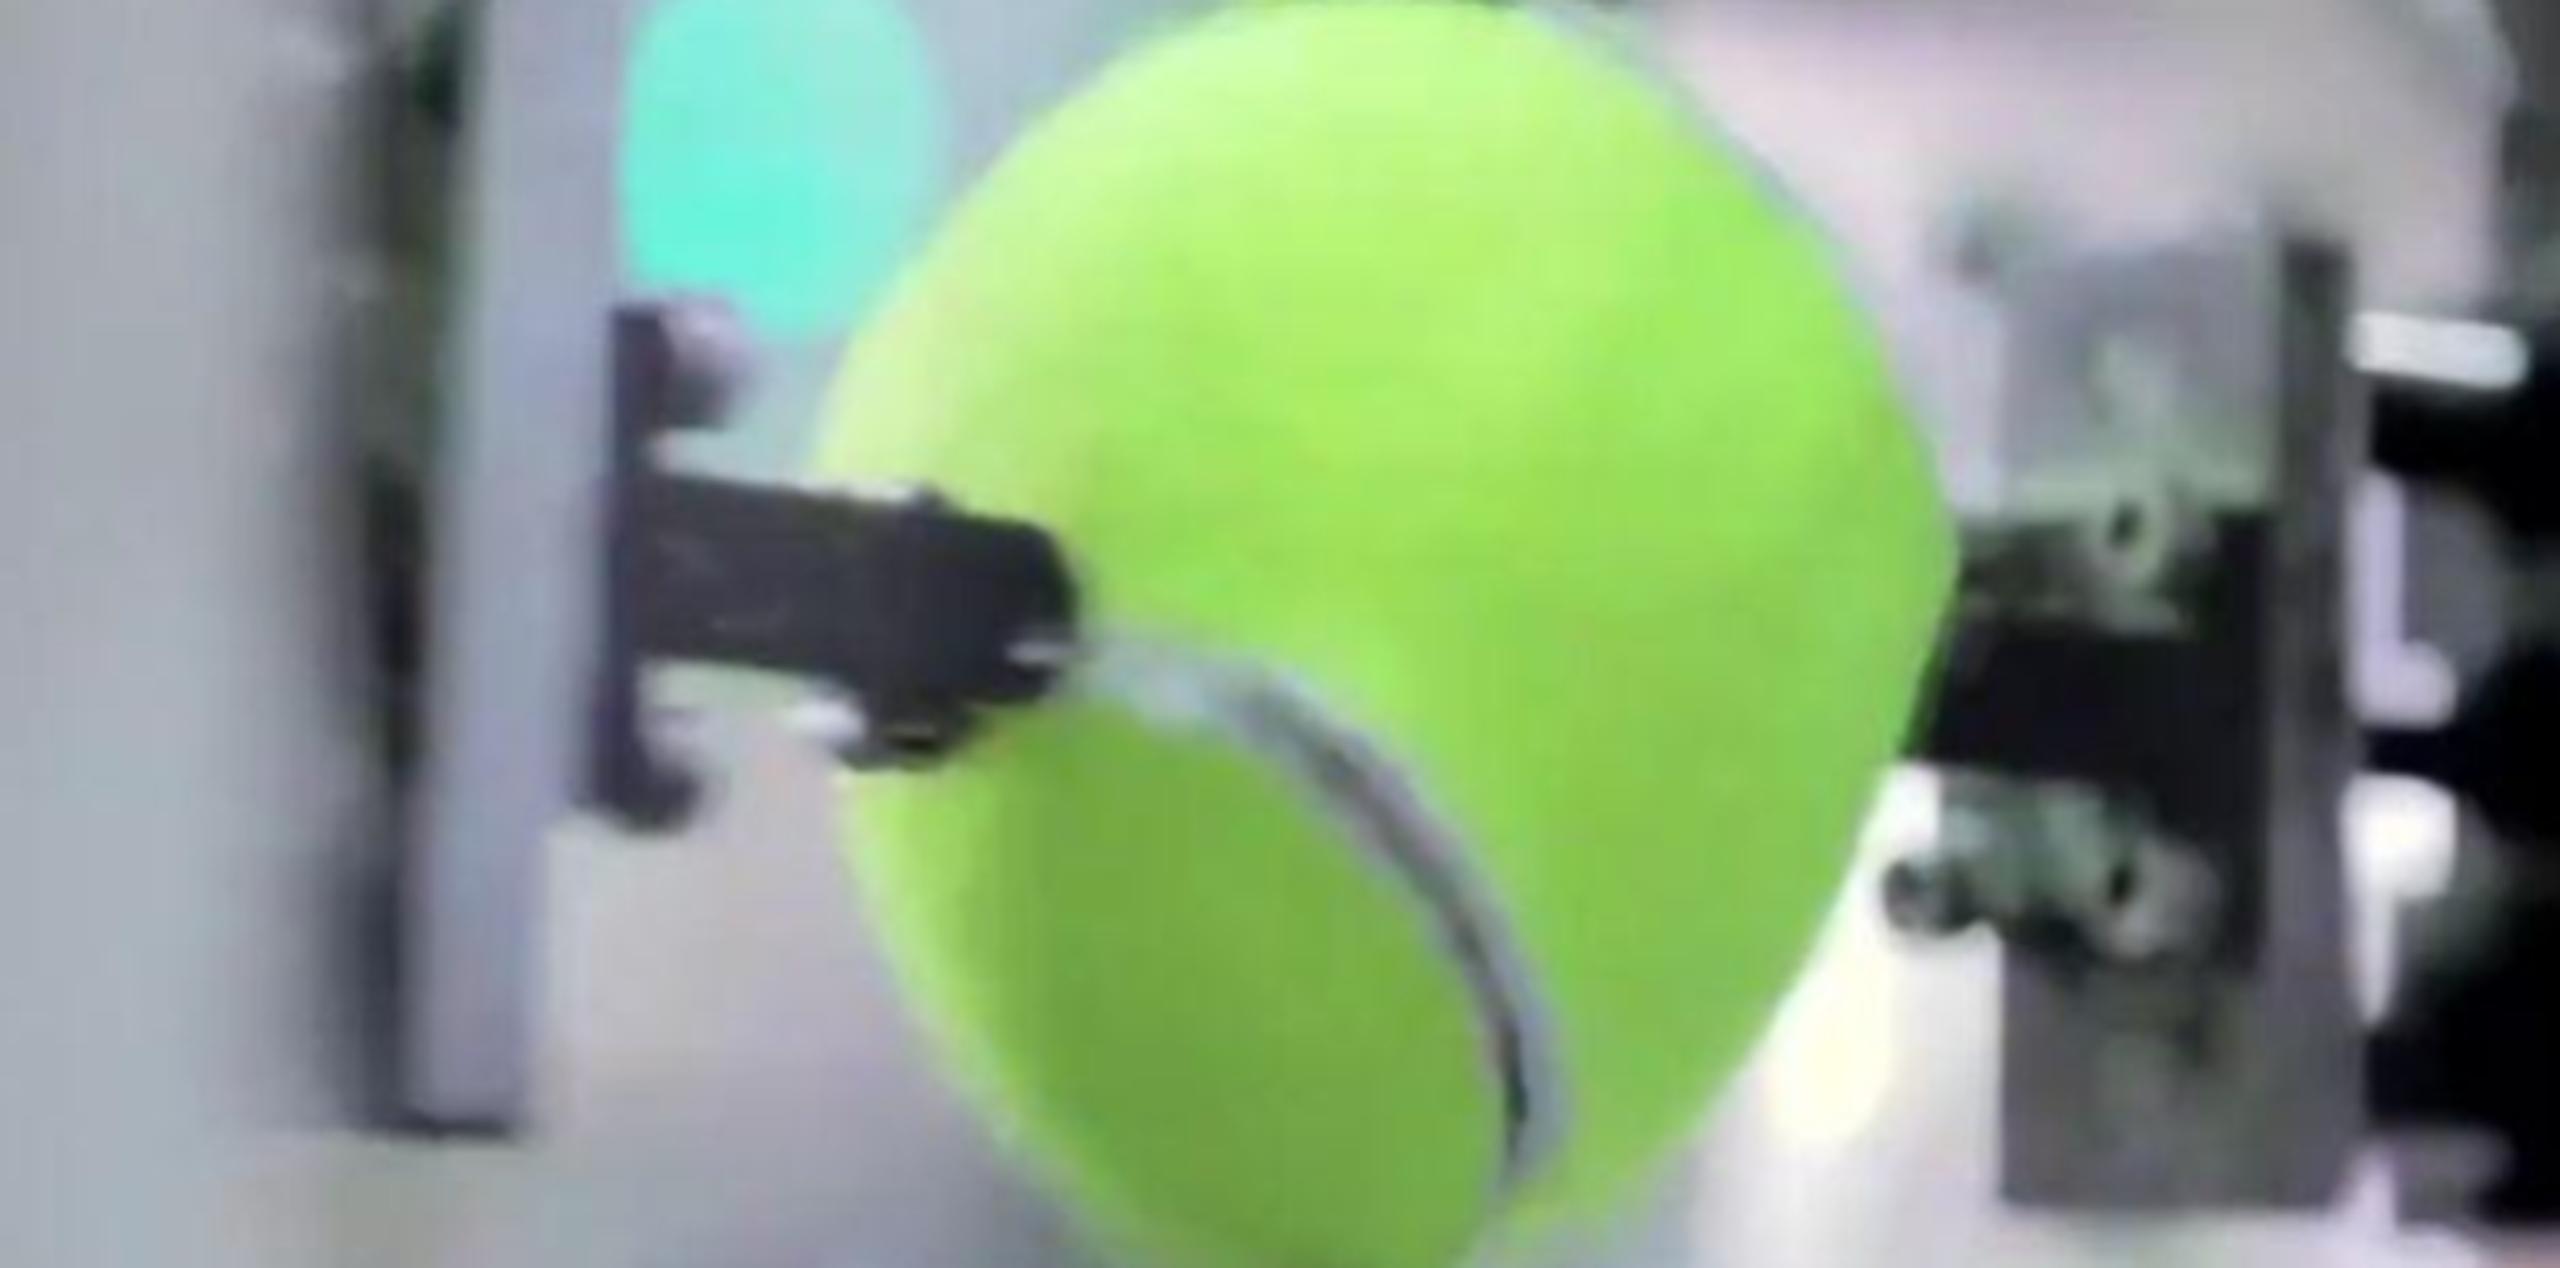 Las pelotas de tenis están hechas de goma natural y son envueltas en una tela especial. (Captura de Facebook)